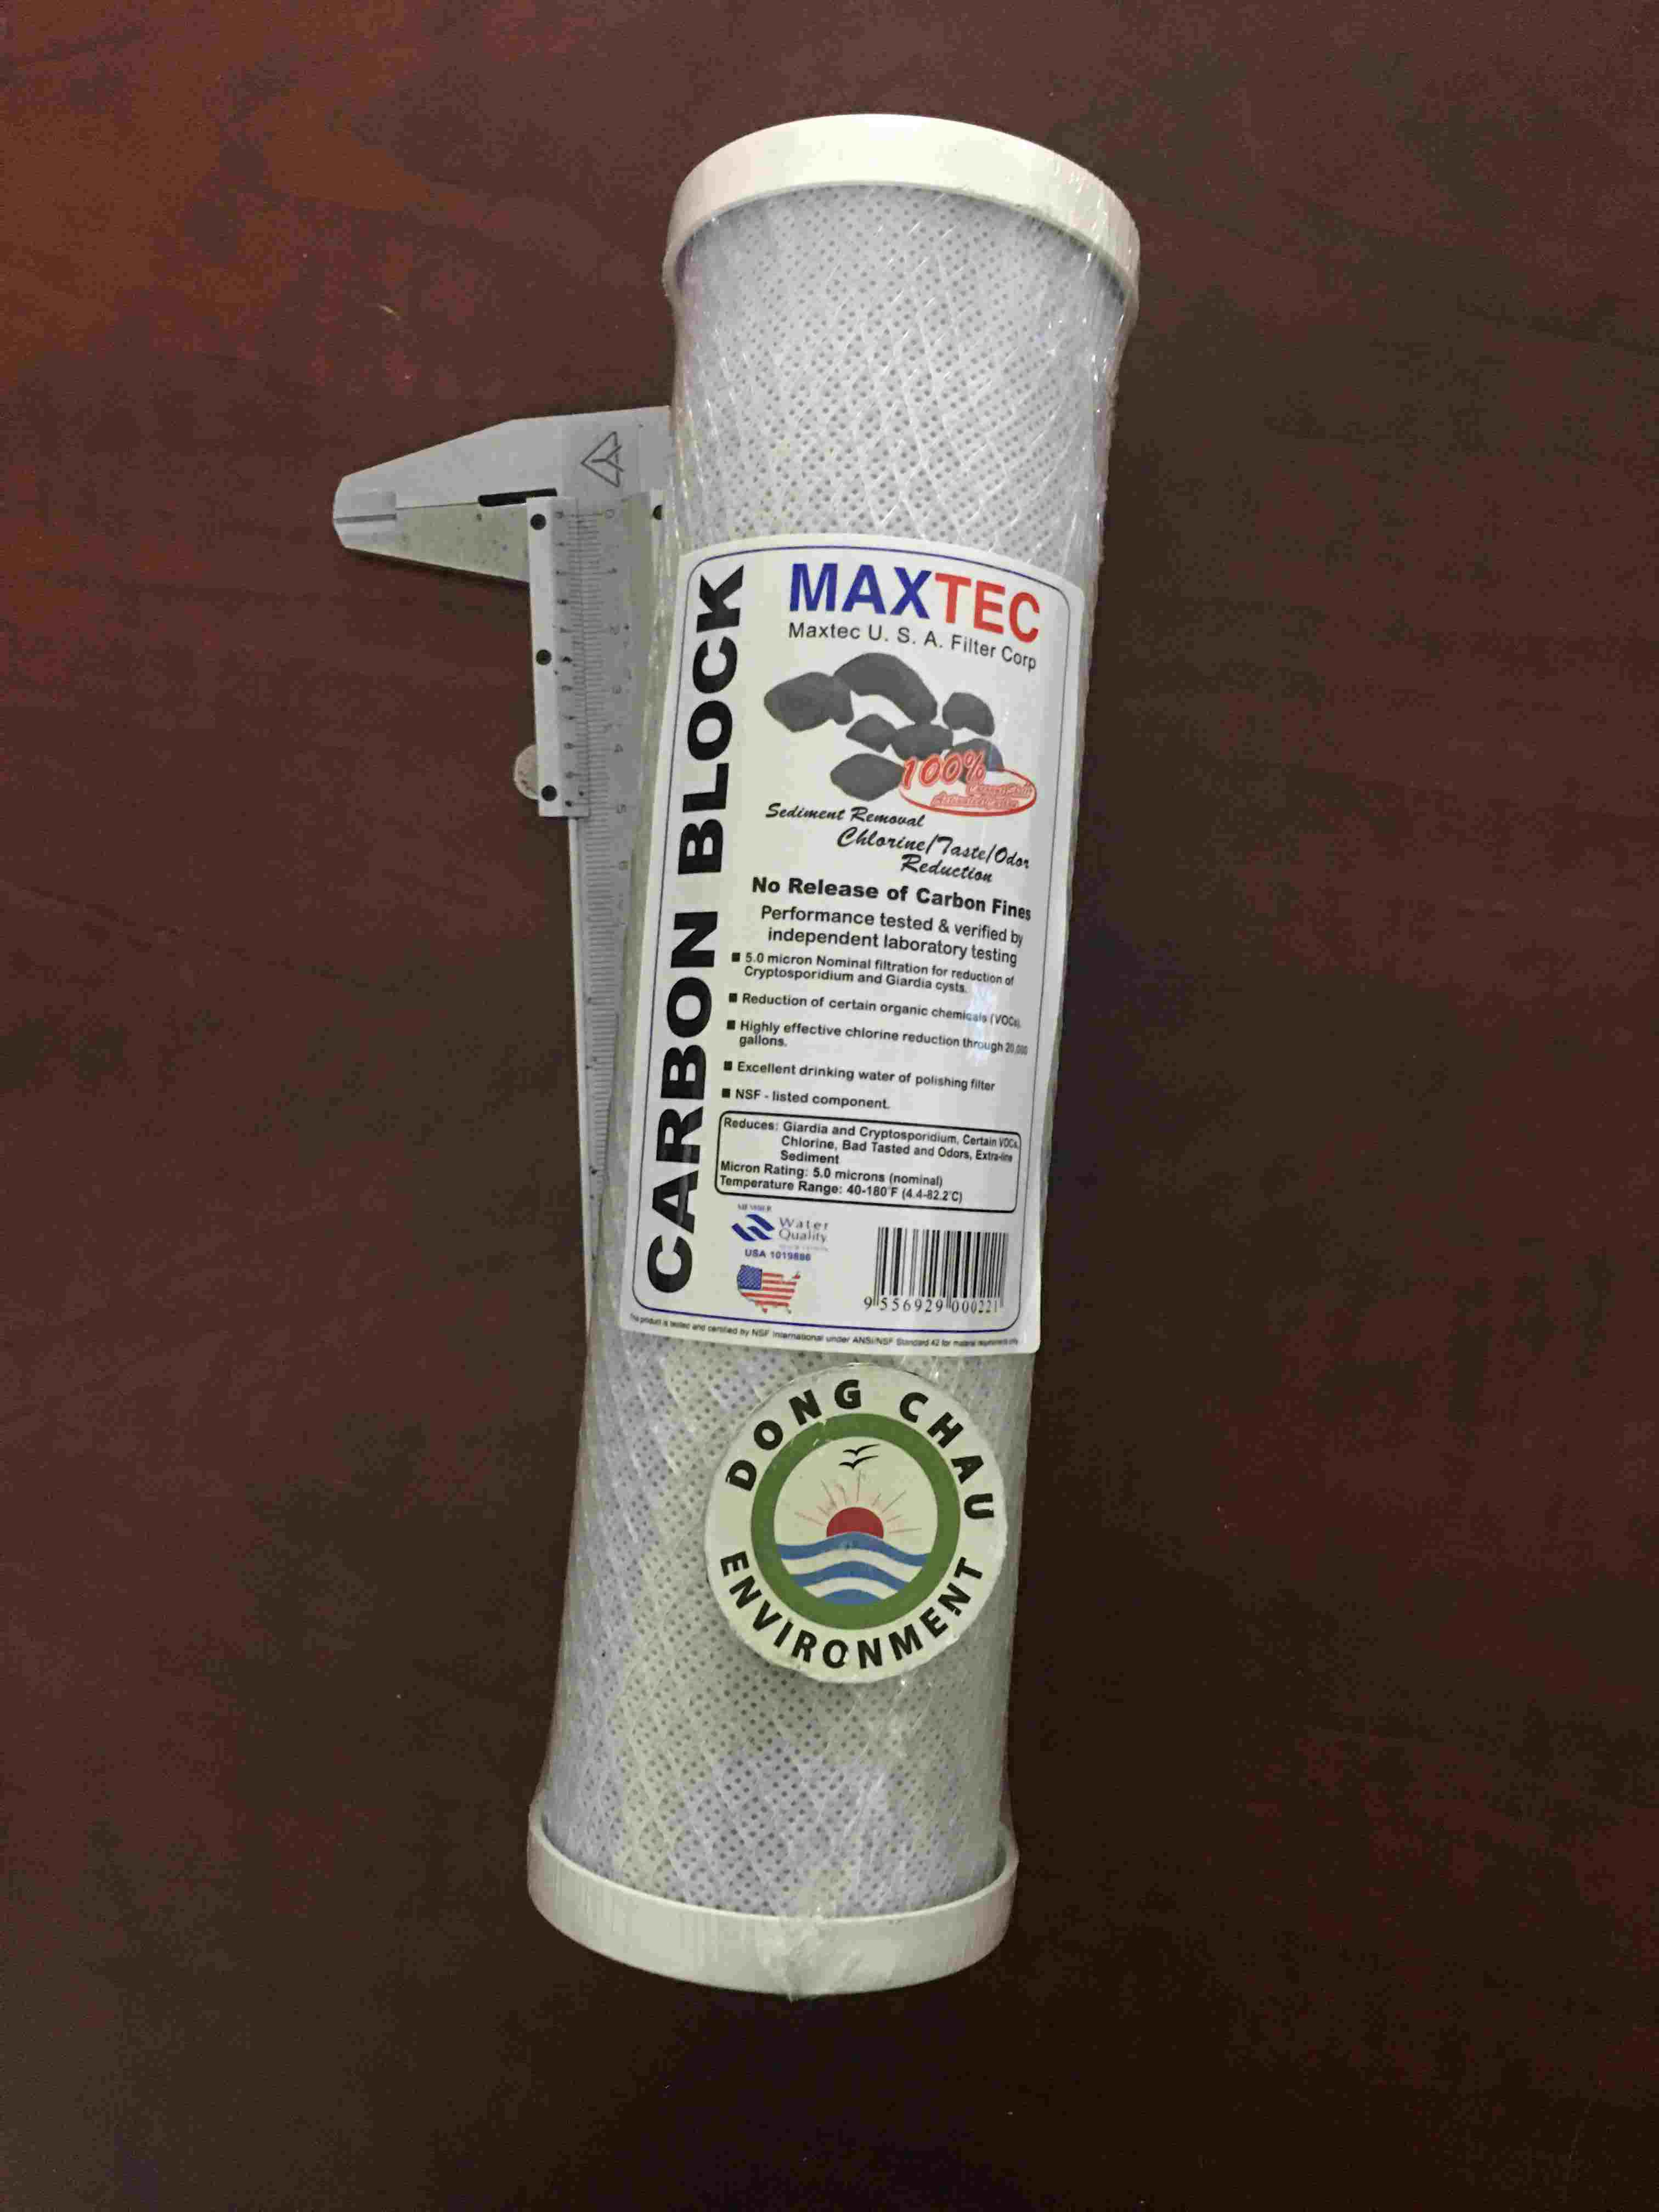 lõi lọc than maxtec 10 inch xử lý mùi màu trong nước